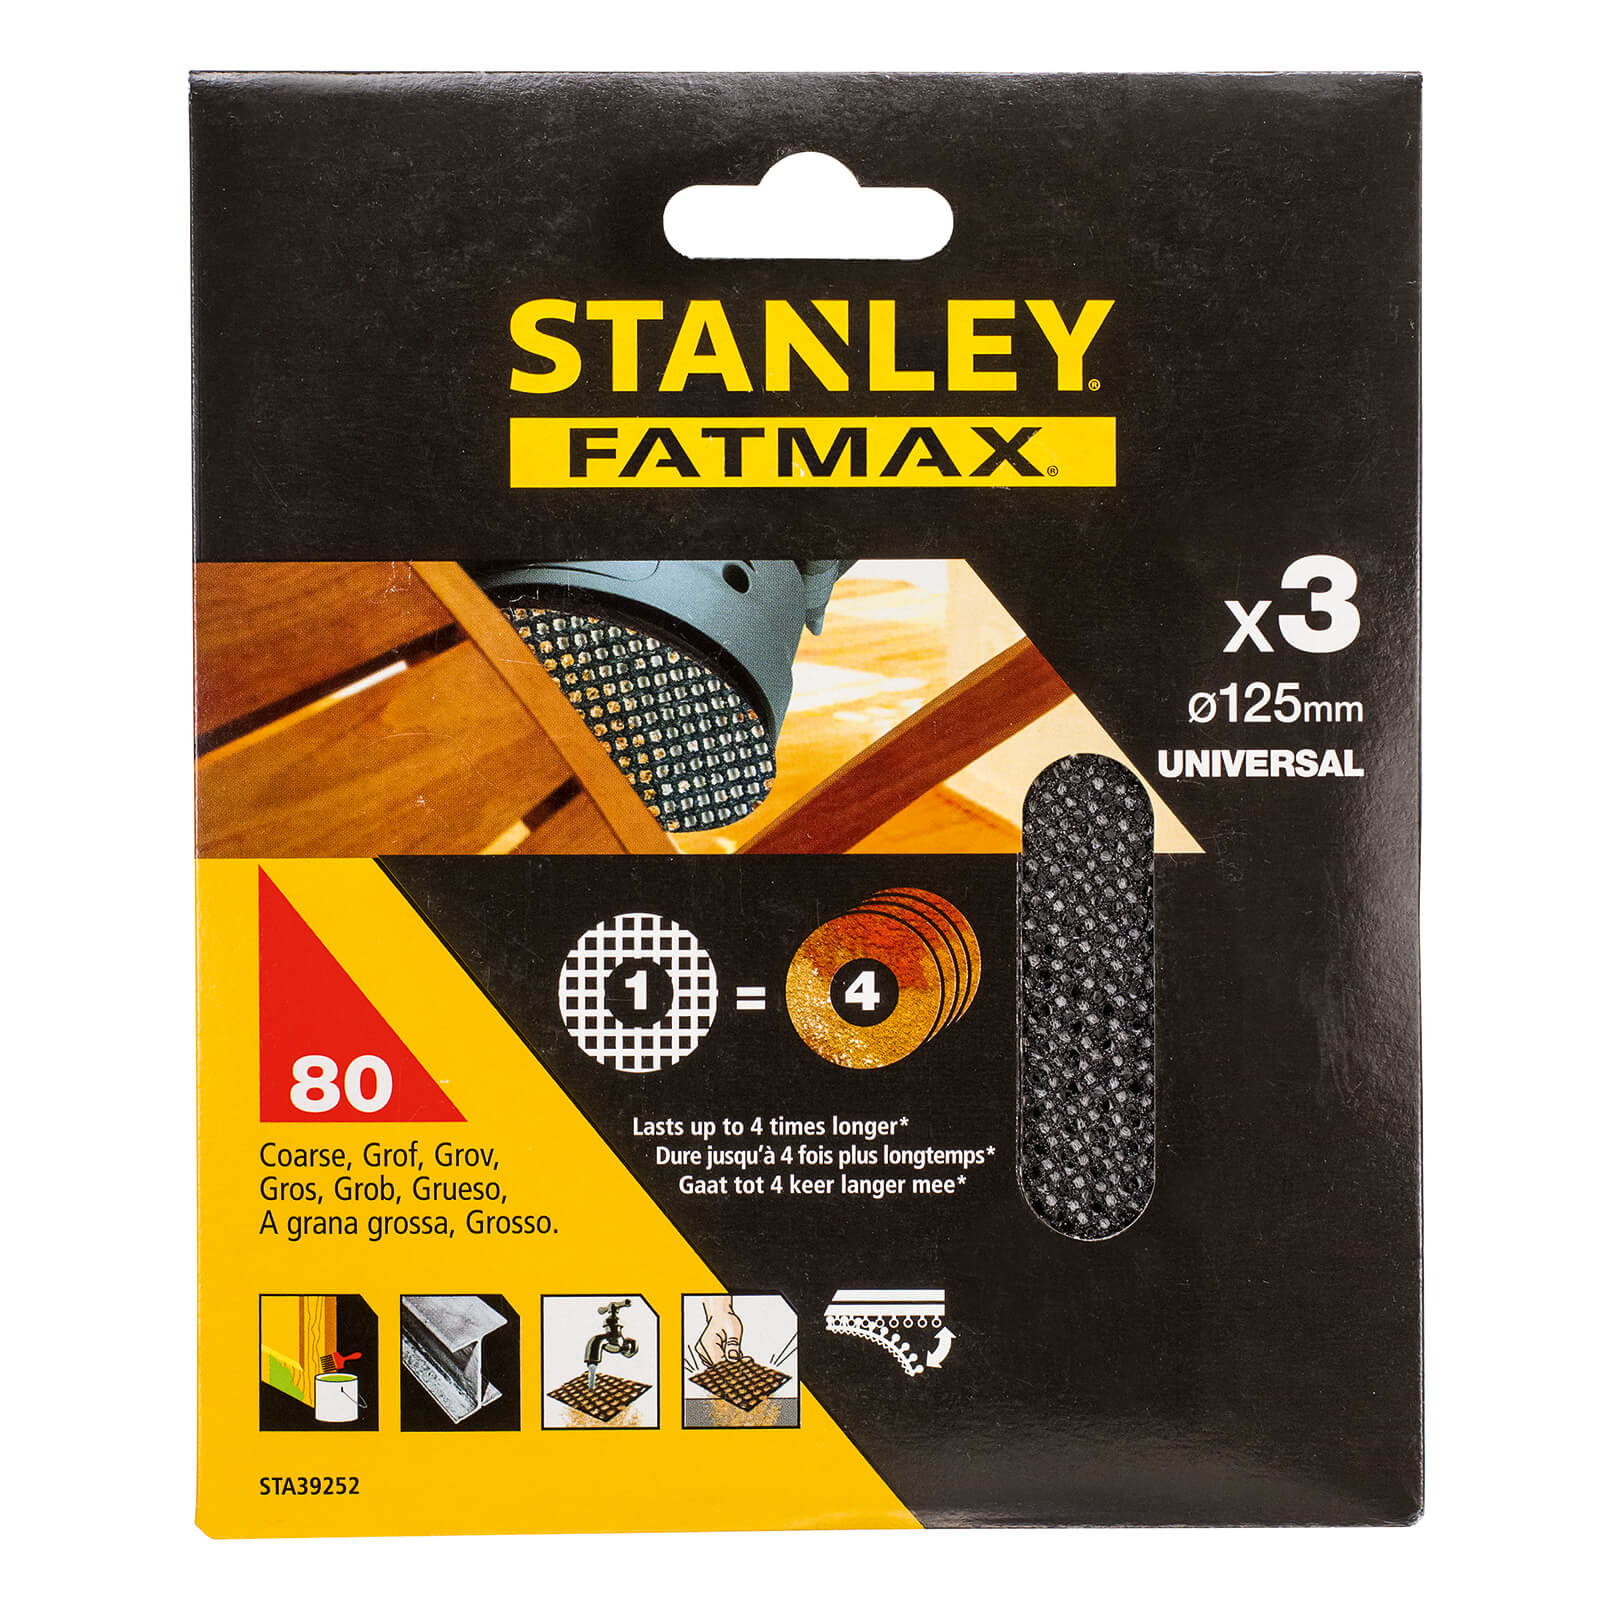 STANLEY FATMAX - 3x 80g Quick Fit Random Orbital Sanding Mesh Discs 125mm